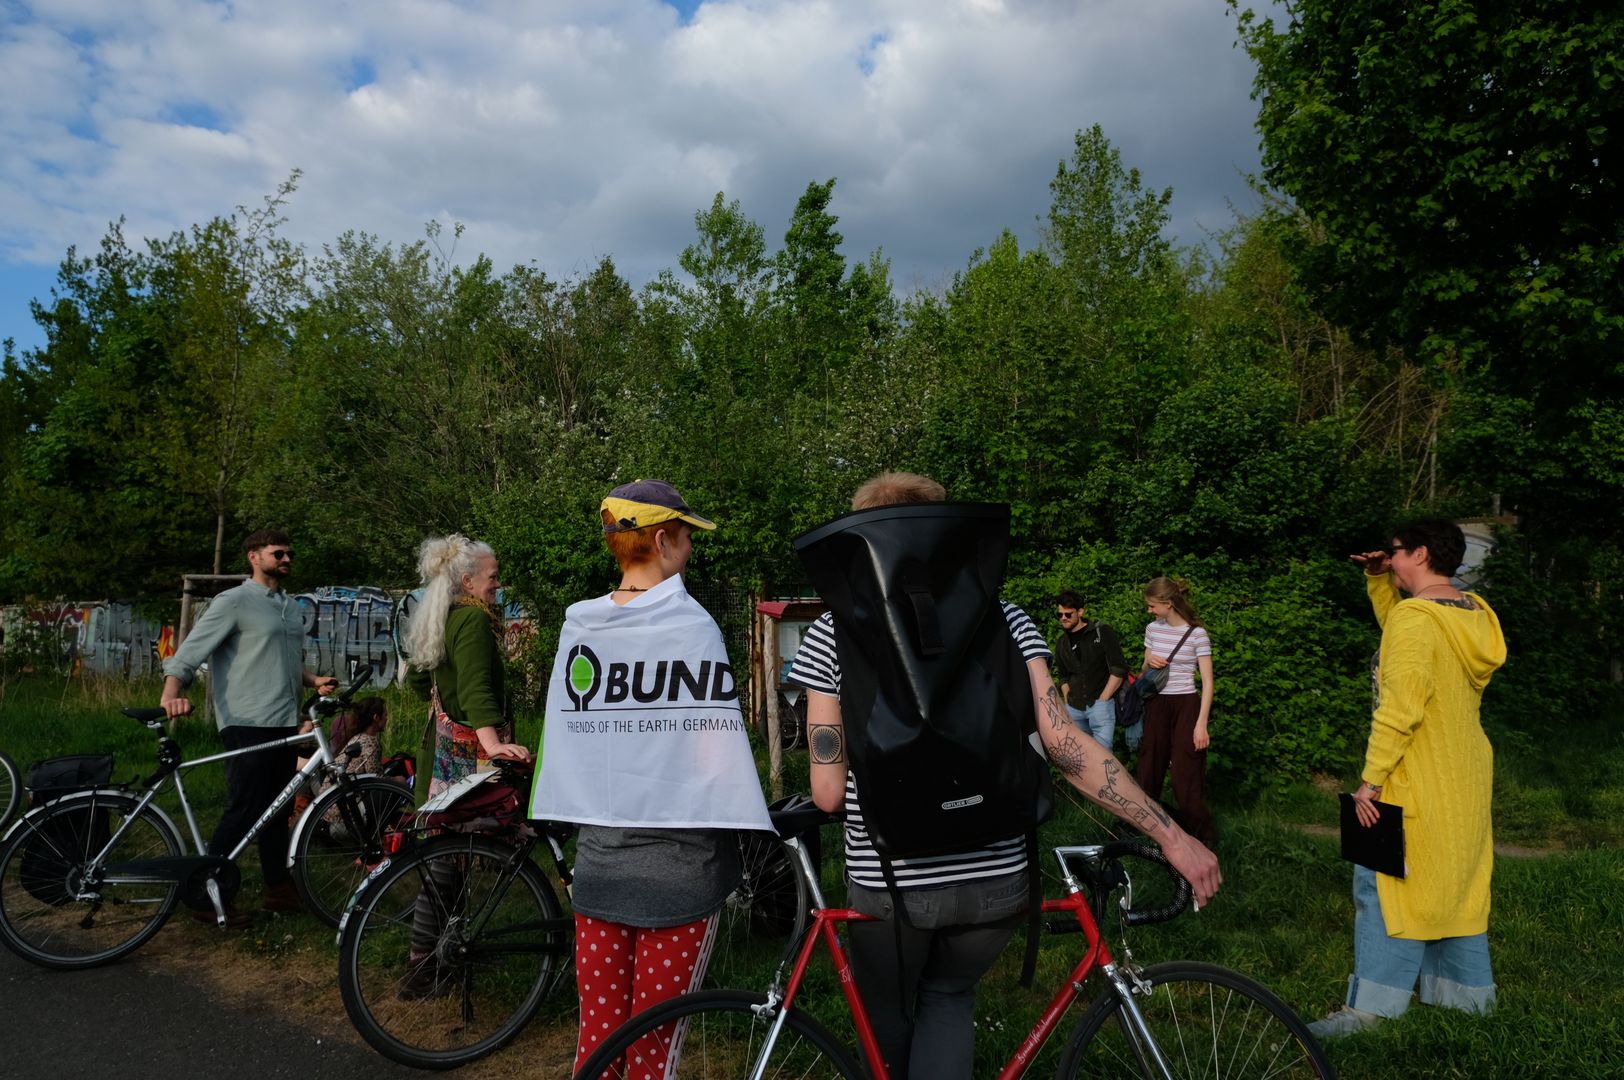 Es sind mehrere Menschen von hinten zu sehen. Eine Person trägt ein Banner mit der Auffschrift "BUND" auf dem Rücken. Die Menschen stehen von Bäumen und haben Fahrräder dabei.